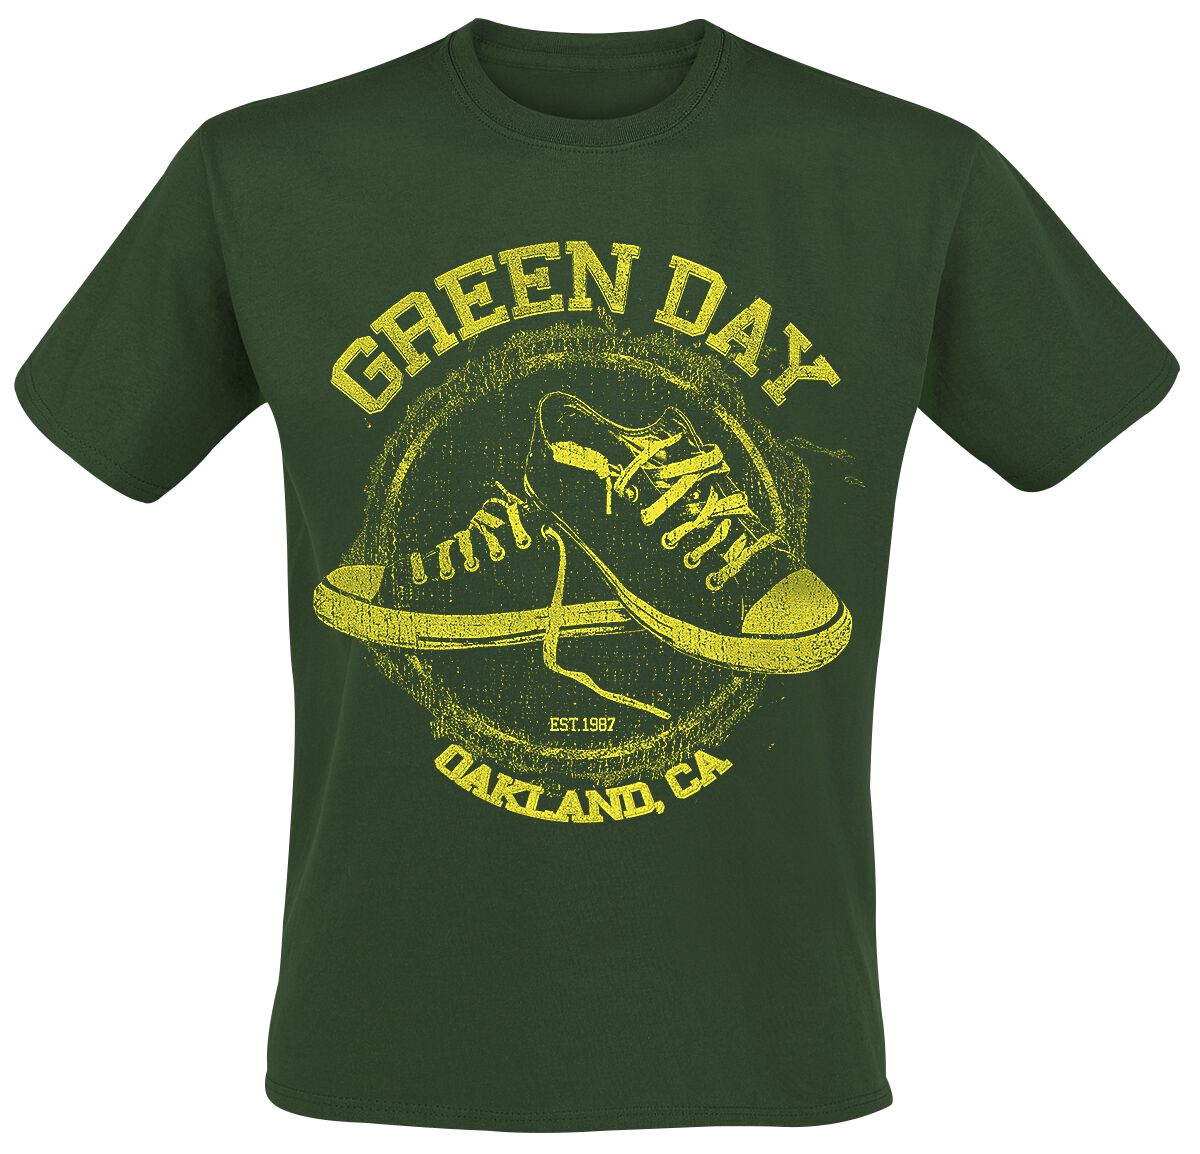 Green Day T-Shirt - All Star - S bis XXL - für Männer - Größe M - grün  - Lizenziertes Merchandise!